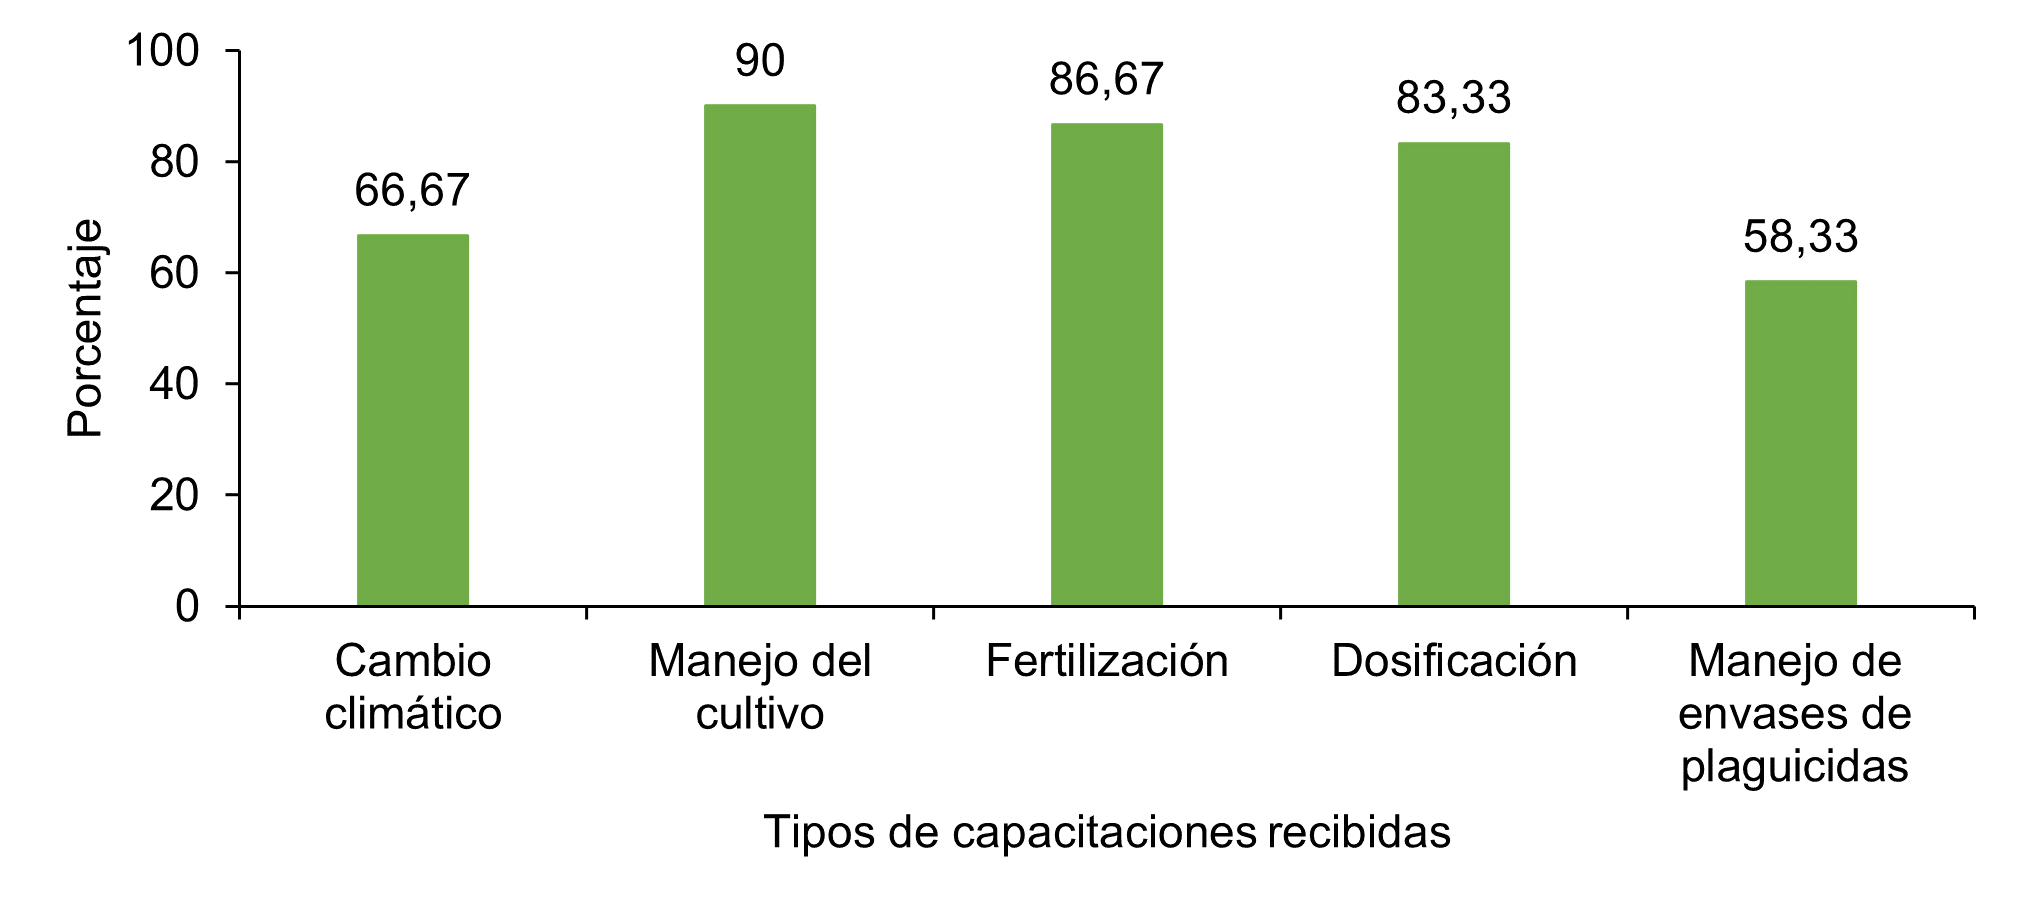 Tipos de capacitación recibidas por los productores de repollo en cuatro cooperativas rurales en Jinotega, Nicaragua